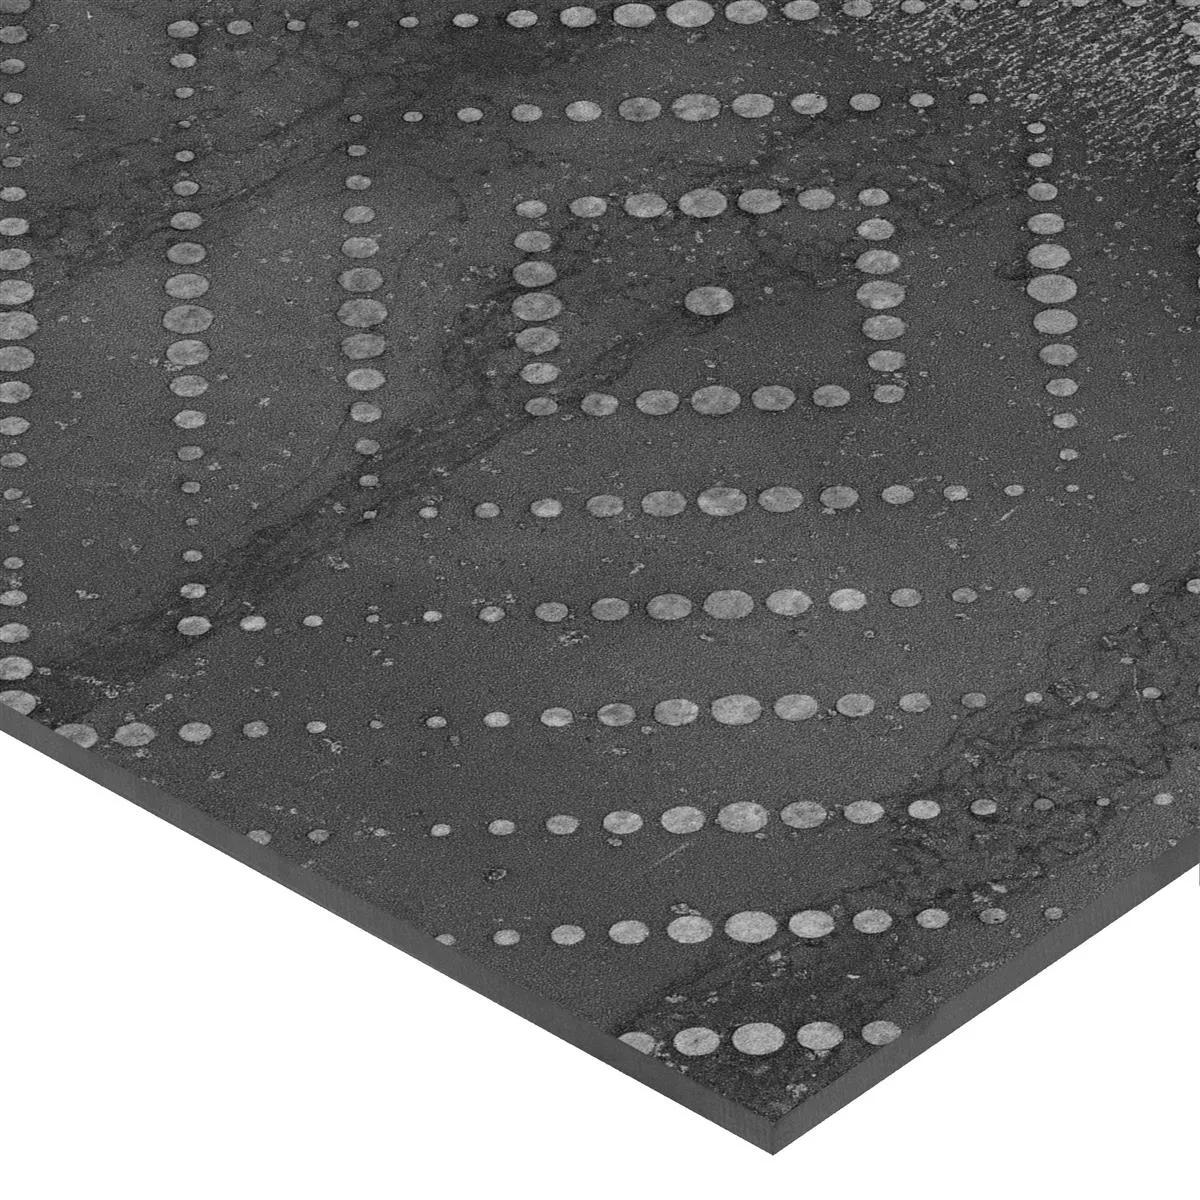 Πρότυπο από Πλακάκια Δαπέδου Chicago Μεταλλική Εμφάνιση Ανθρακίτης R9 - 18,5x18,5cm Pattern 3